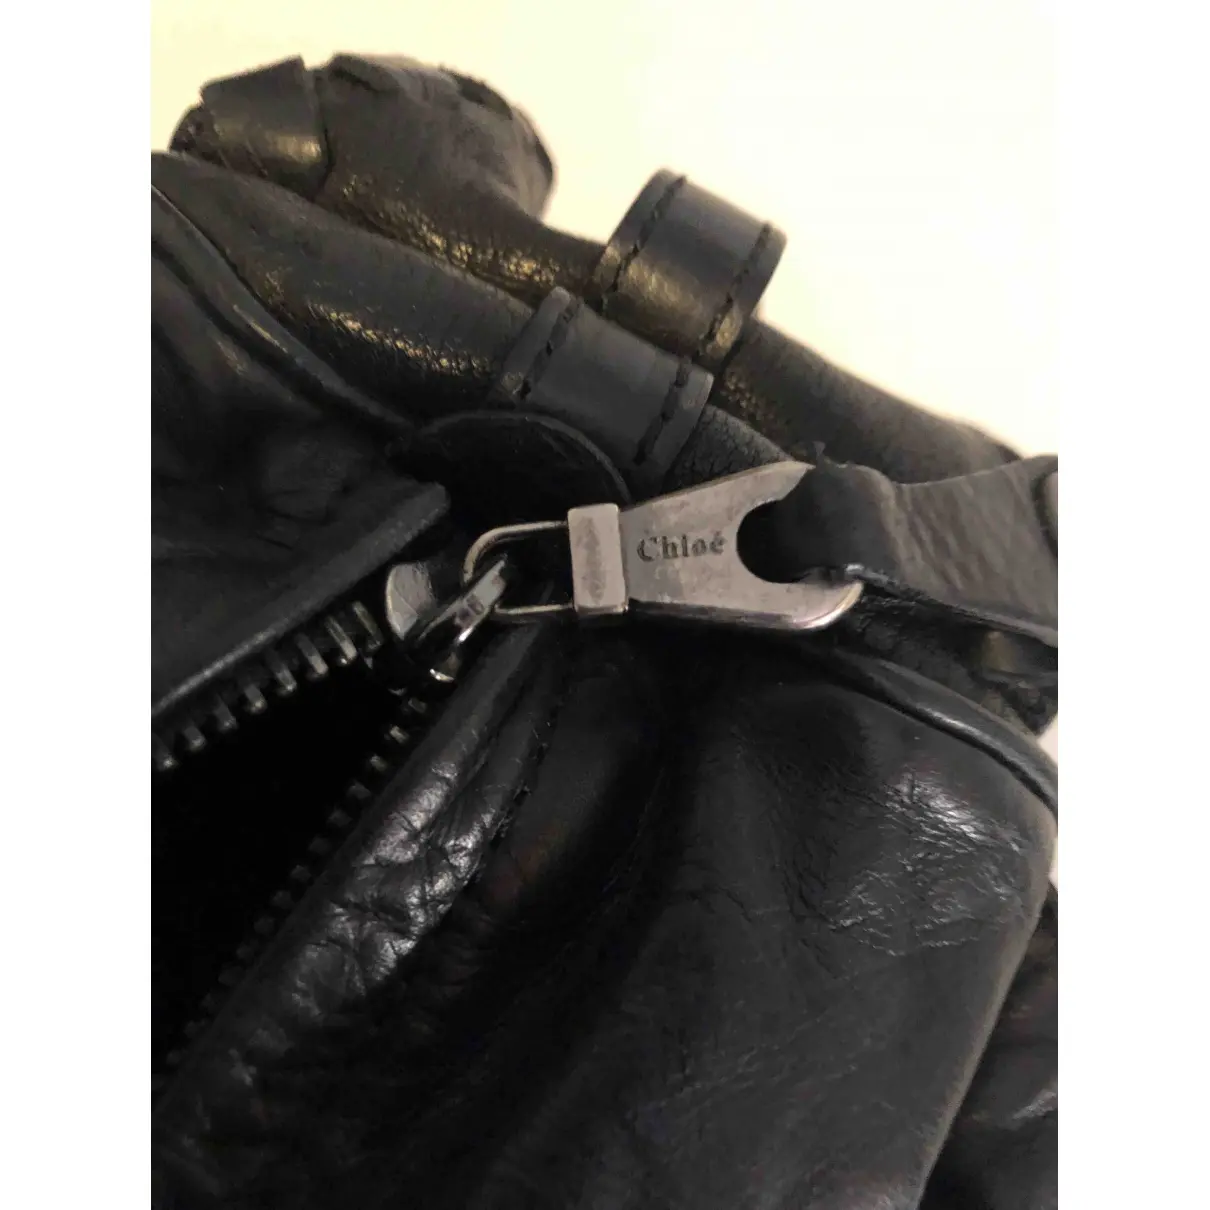 Buy Chloé Silverado leather handbag online